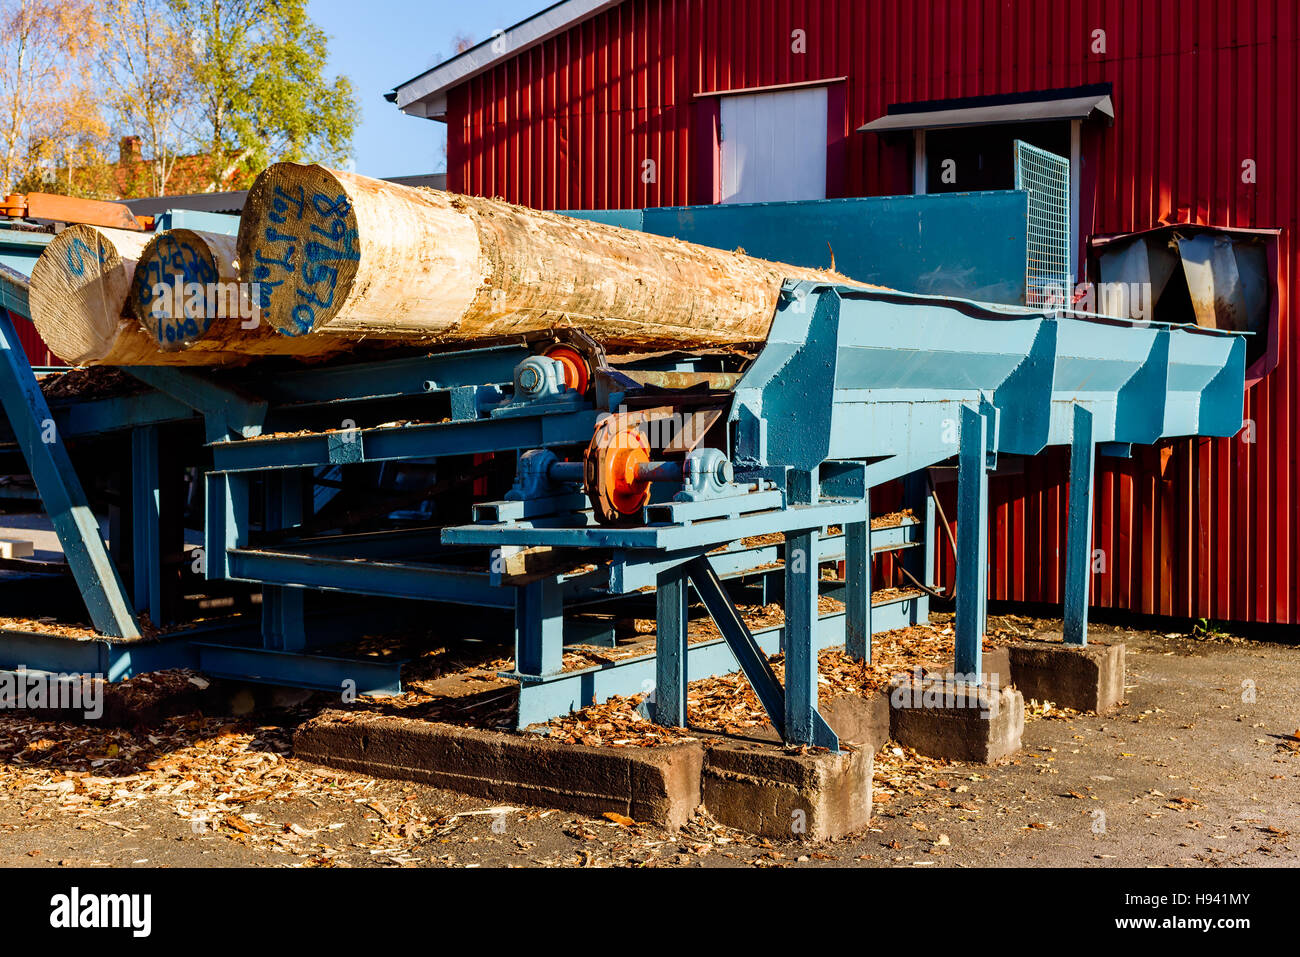 Brakne Hoby, Schweden - 29. Oktober 2016: Dokumentation über den Zugang der Öffentlichkeit Industriegebiet. Futterstelle Holz in einem Sägewerk mit anmeldet Förderband. Stockfoto